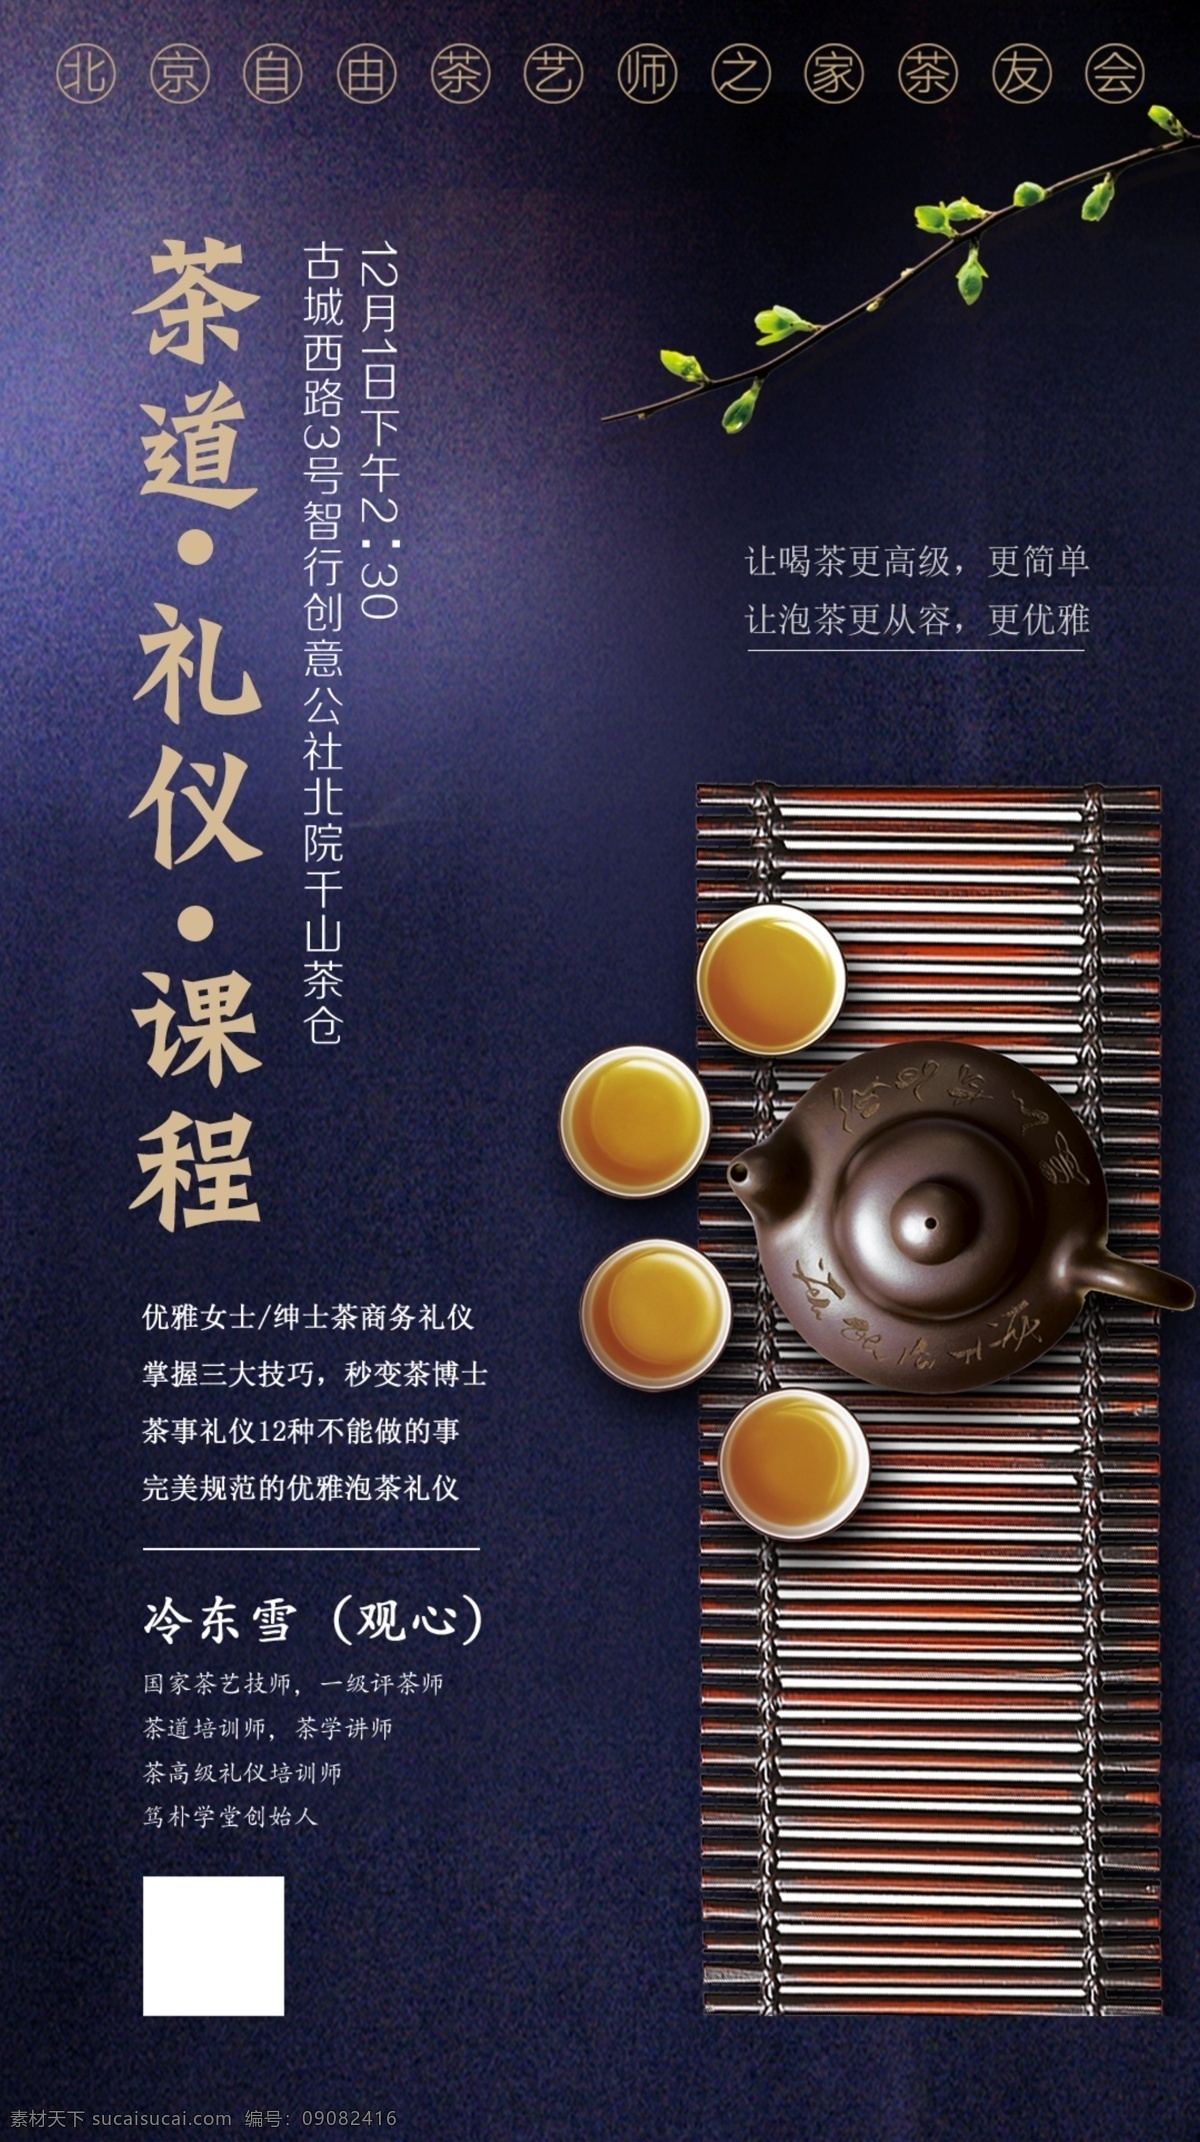 茶道 礼仪 课程 海报 茶 品茶 艺术 活动 微信 ps 生活 中式 古典 国风 传统